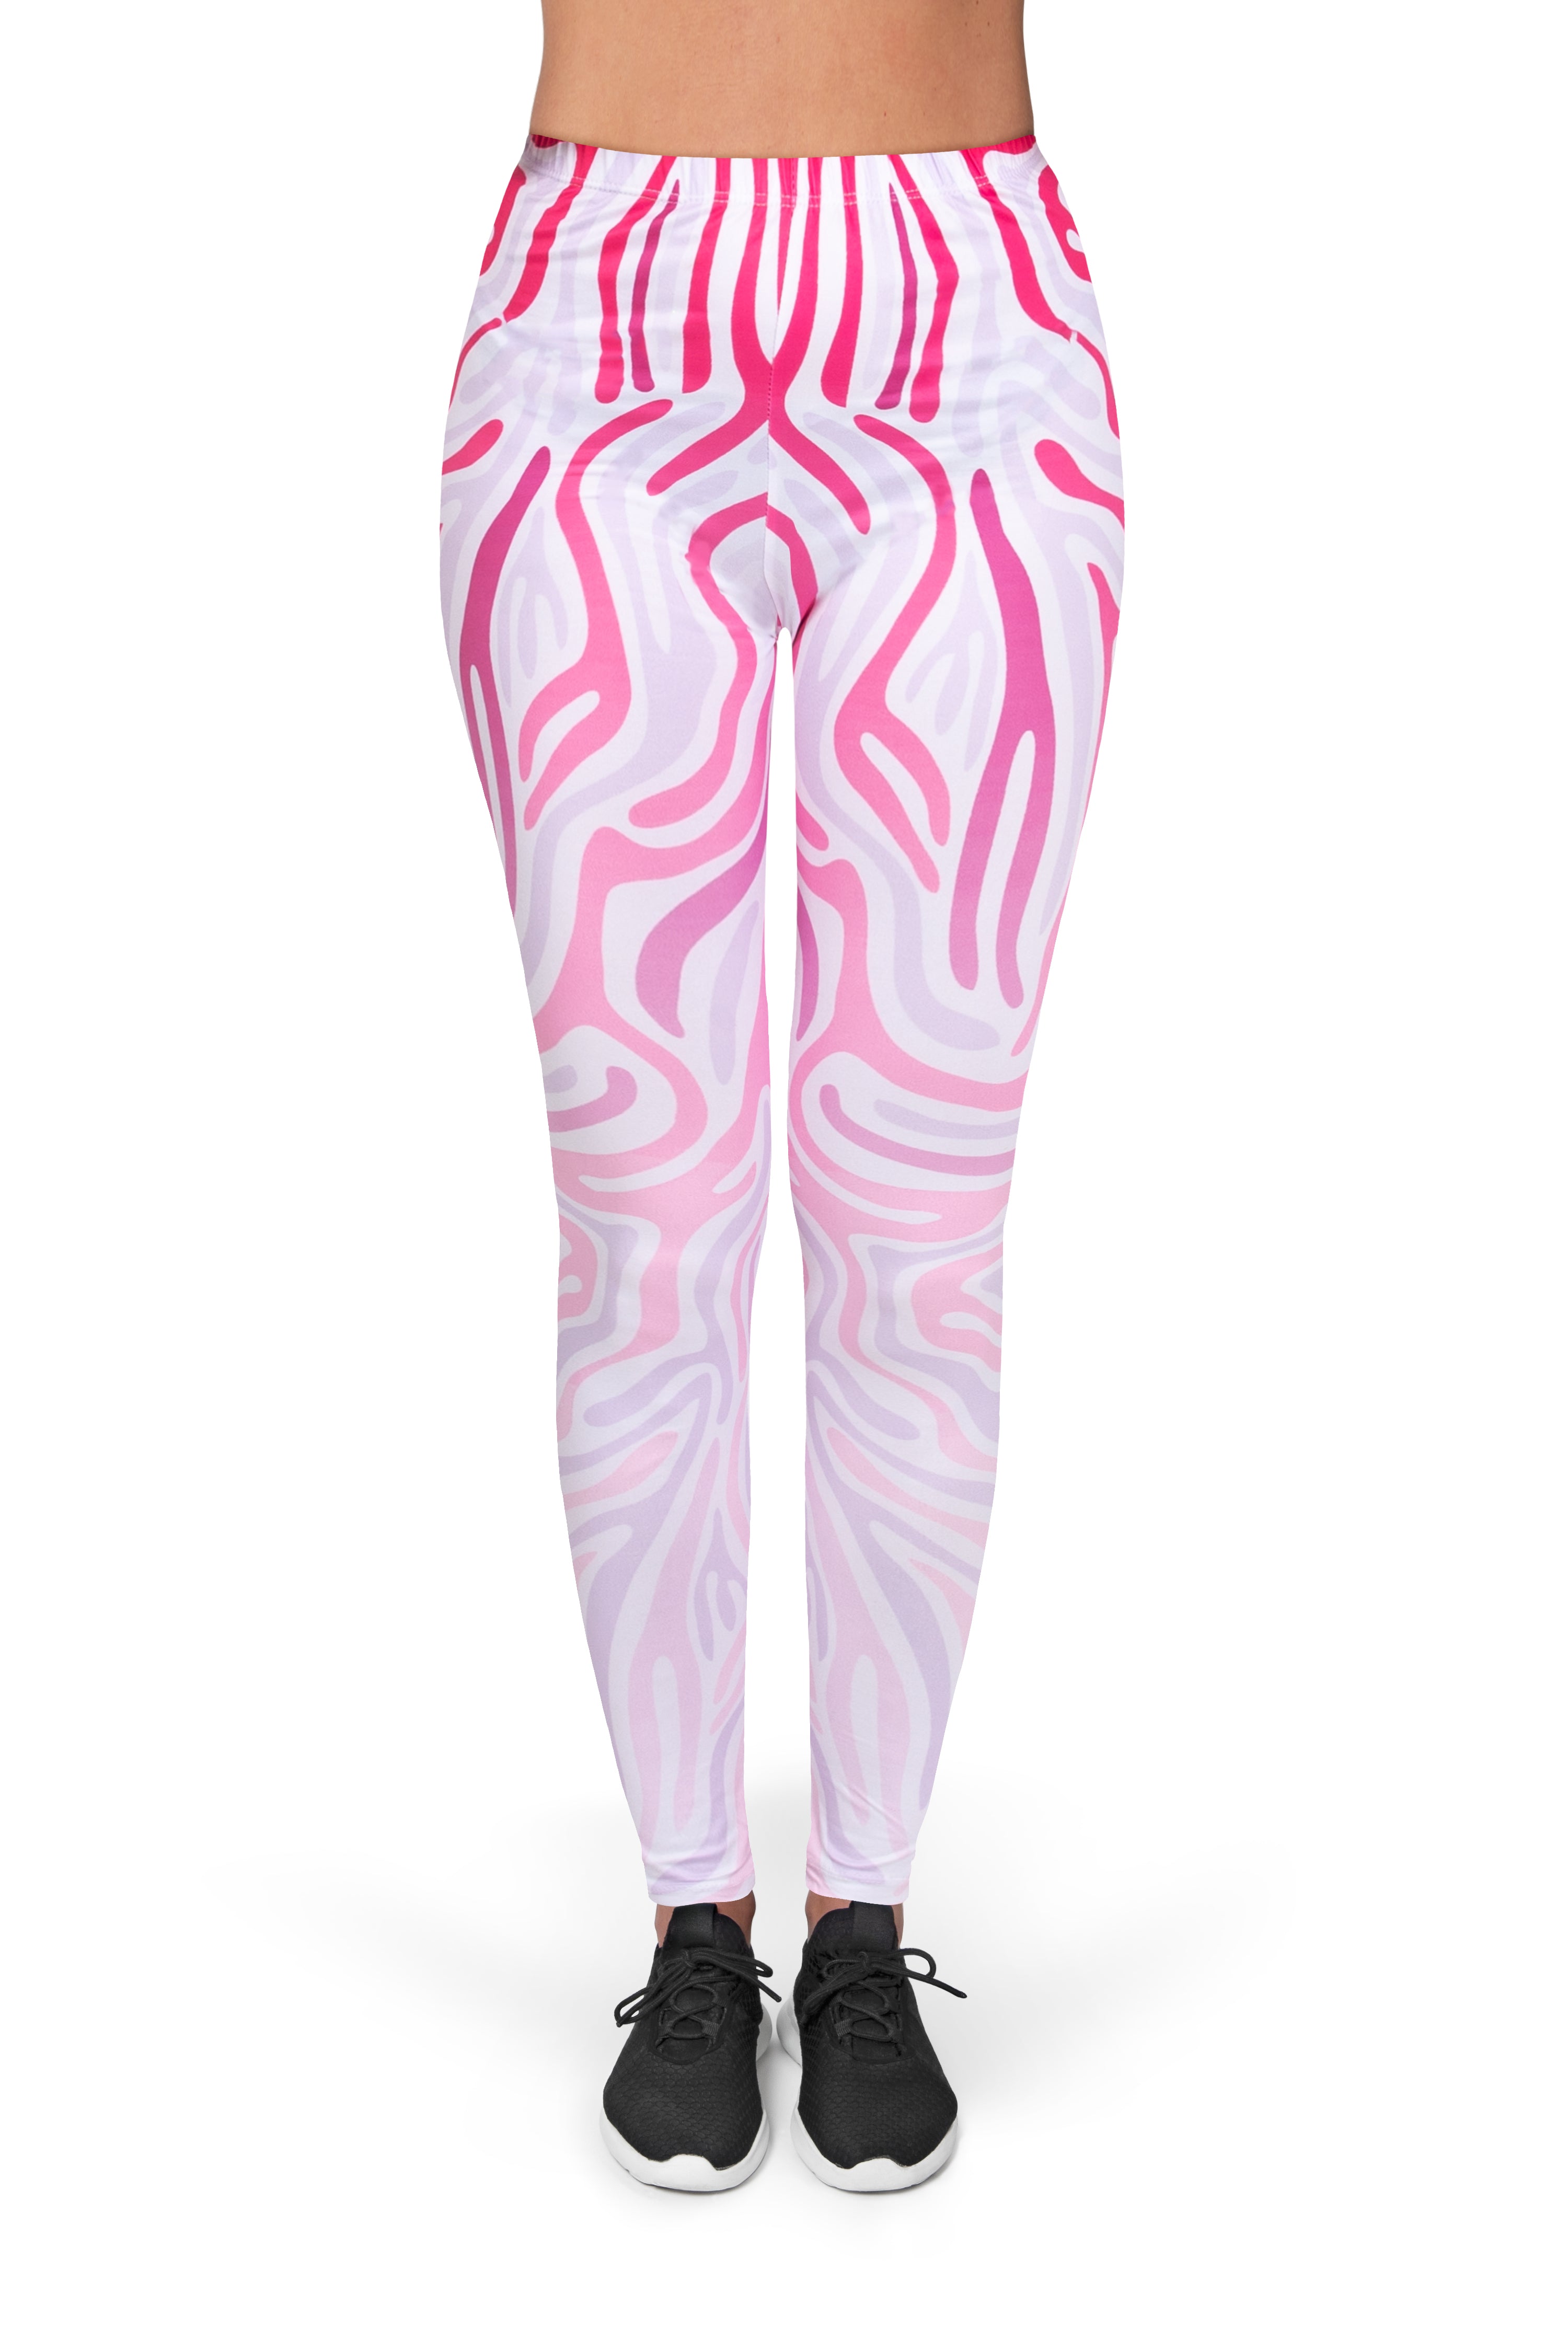 Full length womens/girls 3D full print leggings ****zebra pink****